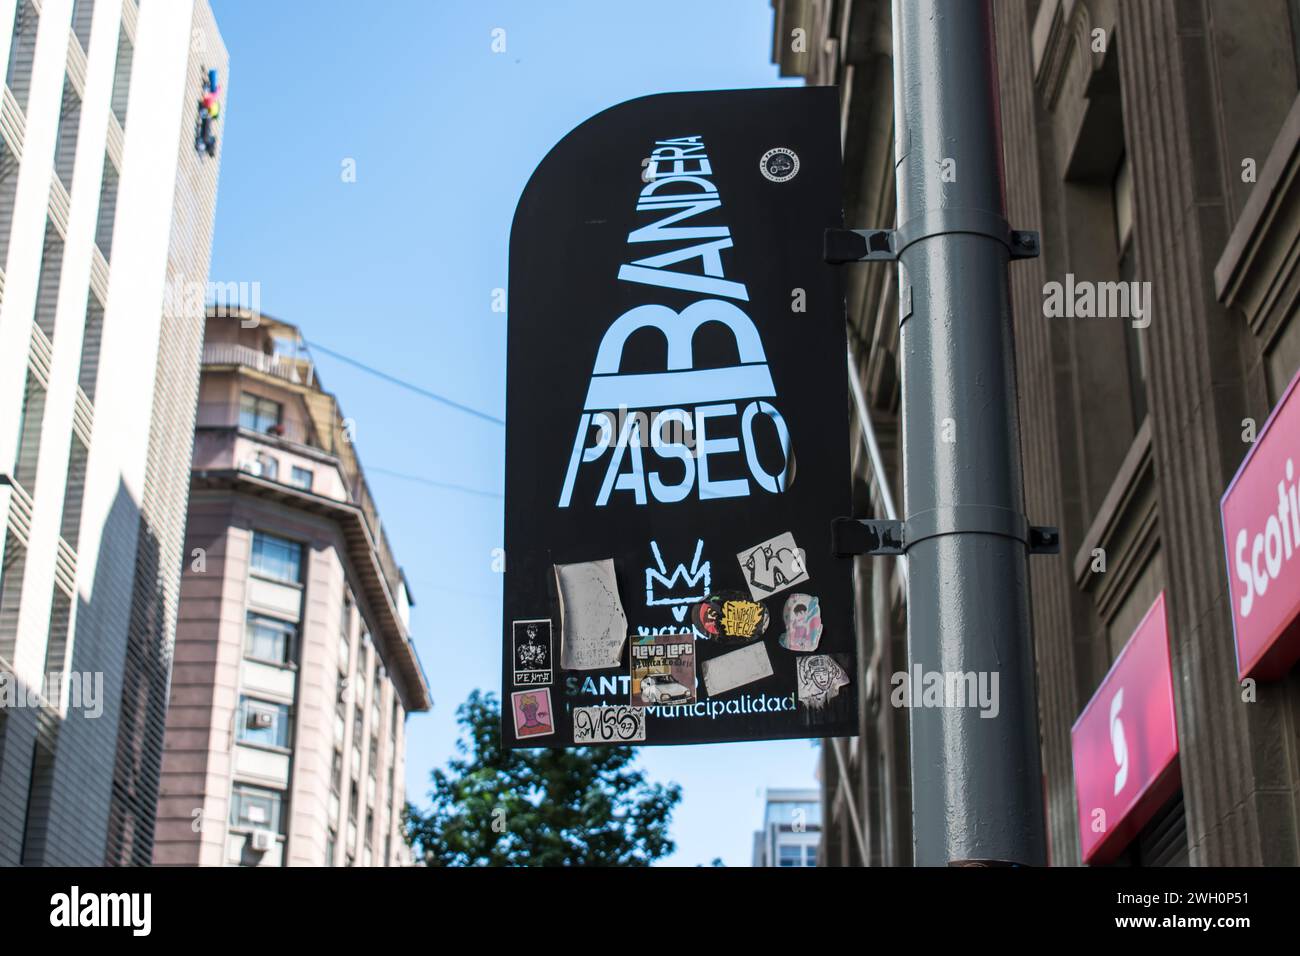 Paseo Bandera, situato a Santiago, Cile, è una vivace strada pedonale che ha subito una significativa rivitalizzazione urbana negli ultimi anni. Foto Stock